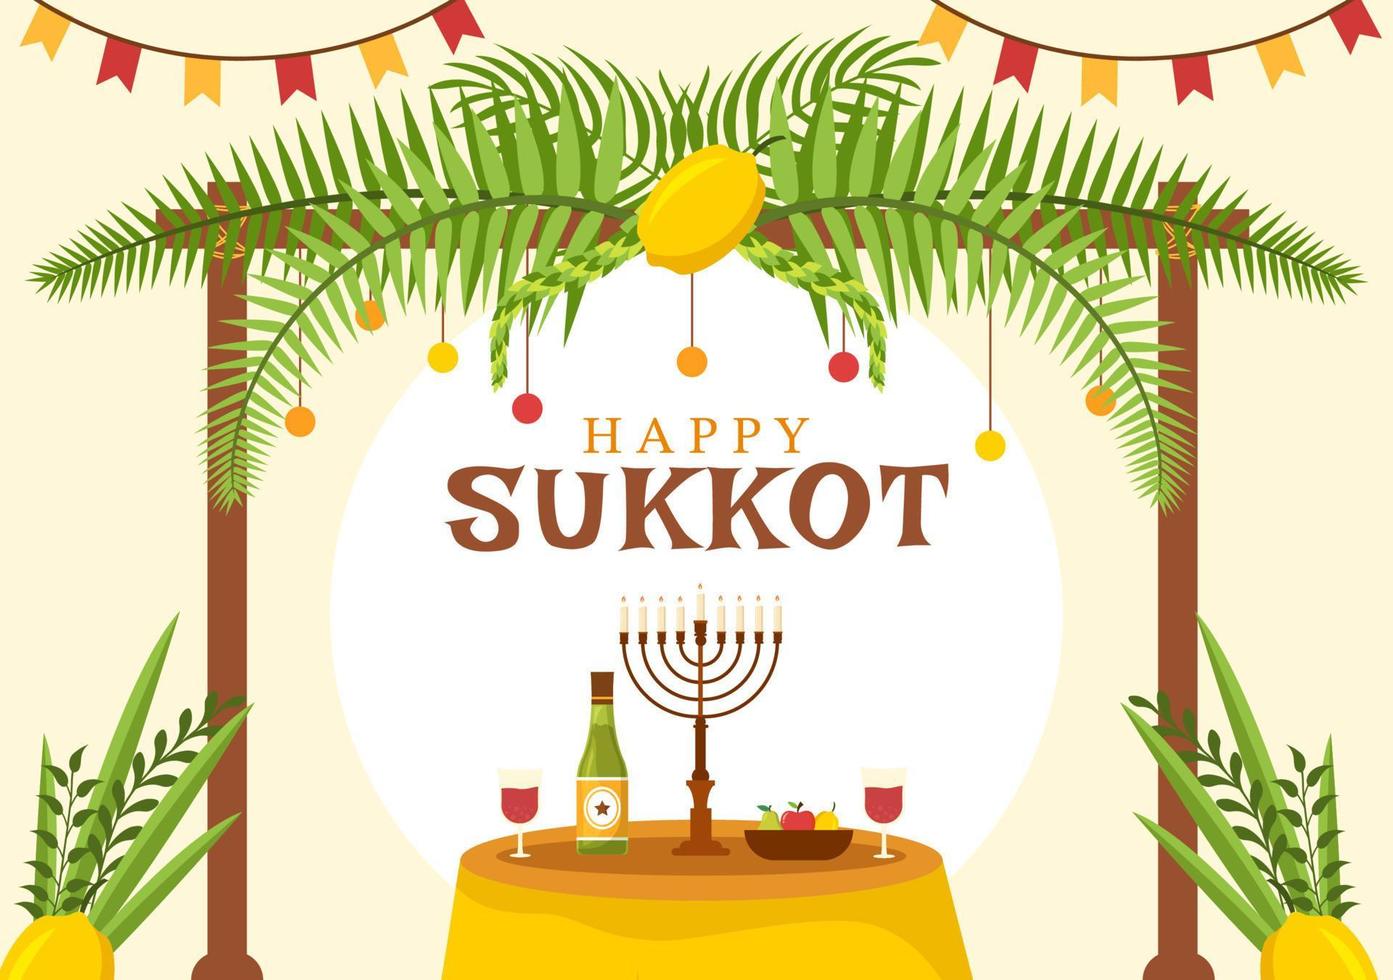 felice festa ebraica sukkot fumetto disegnato a mano illustrazione piatta con sukkah, etrog, lulav, arava, hadas e decorazione di sfondo vettore